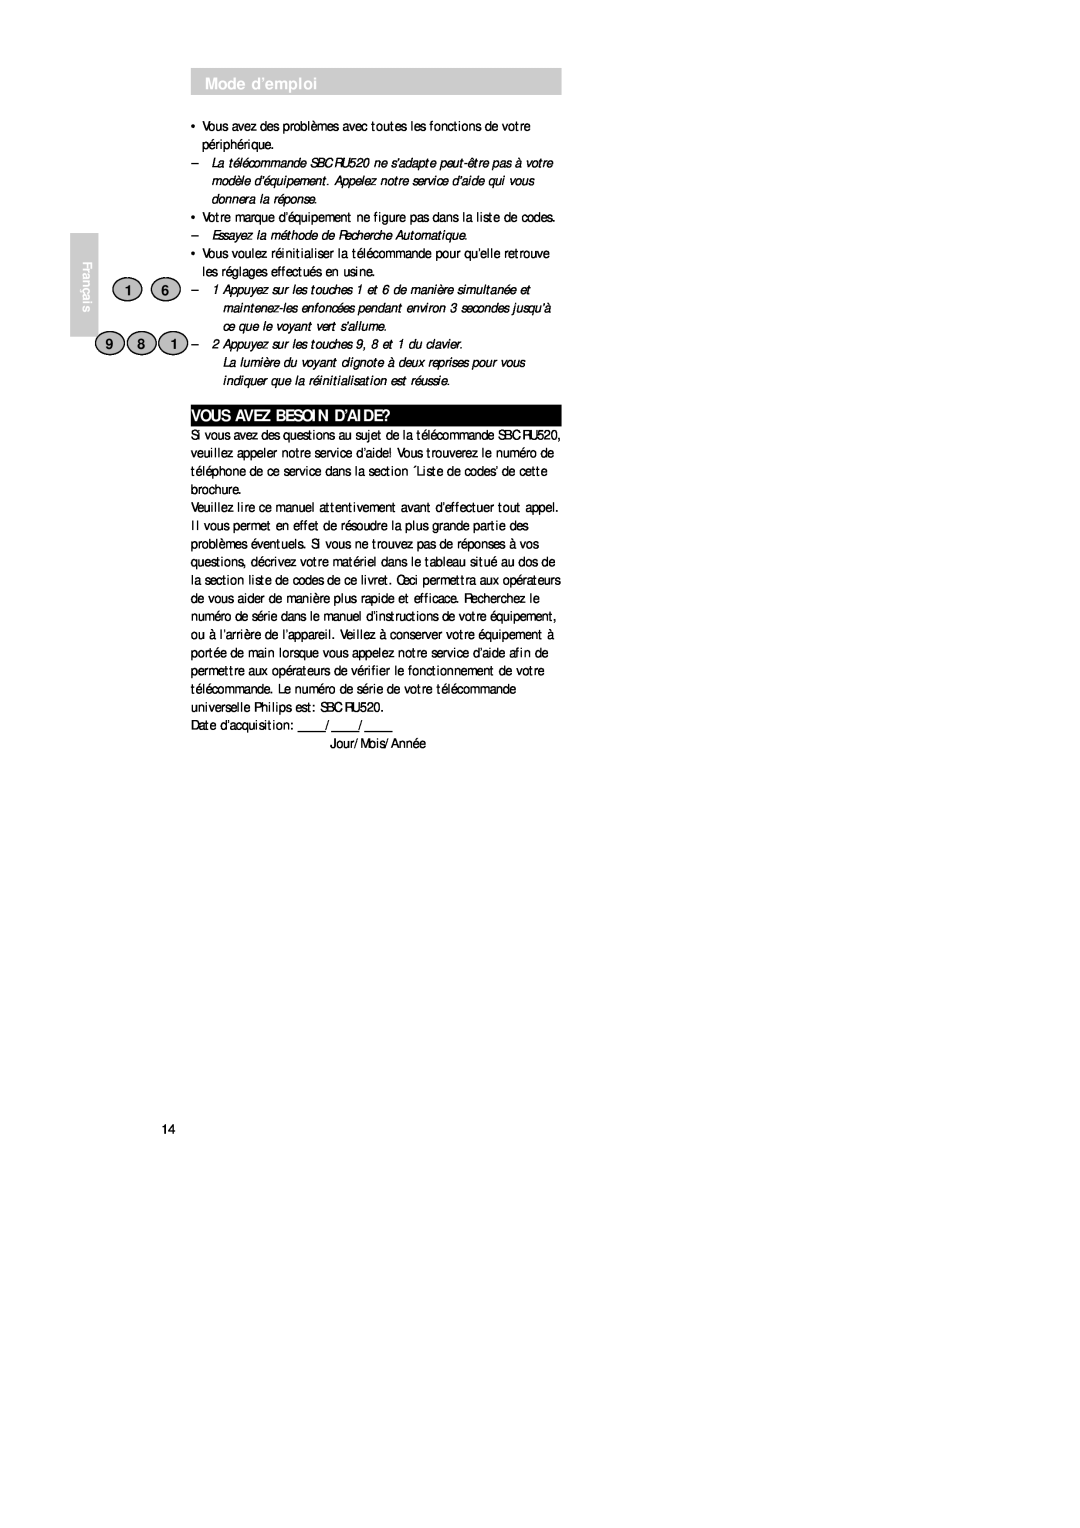 Philips SBC RU 520 manual Vous Avez Besoin D’Aide?, Mode d’emploi, Français, Date d’acquisition Jour/Mois/Année 